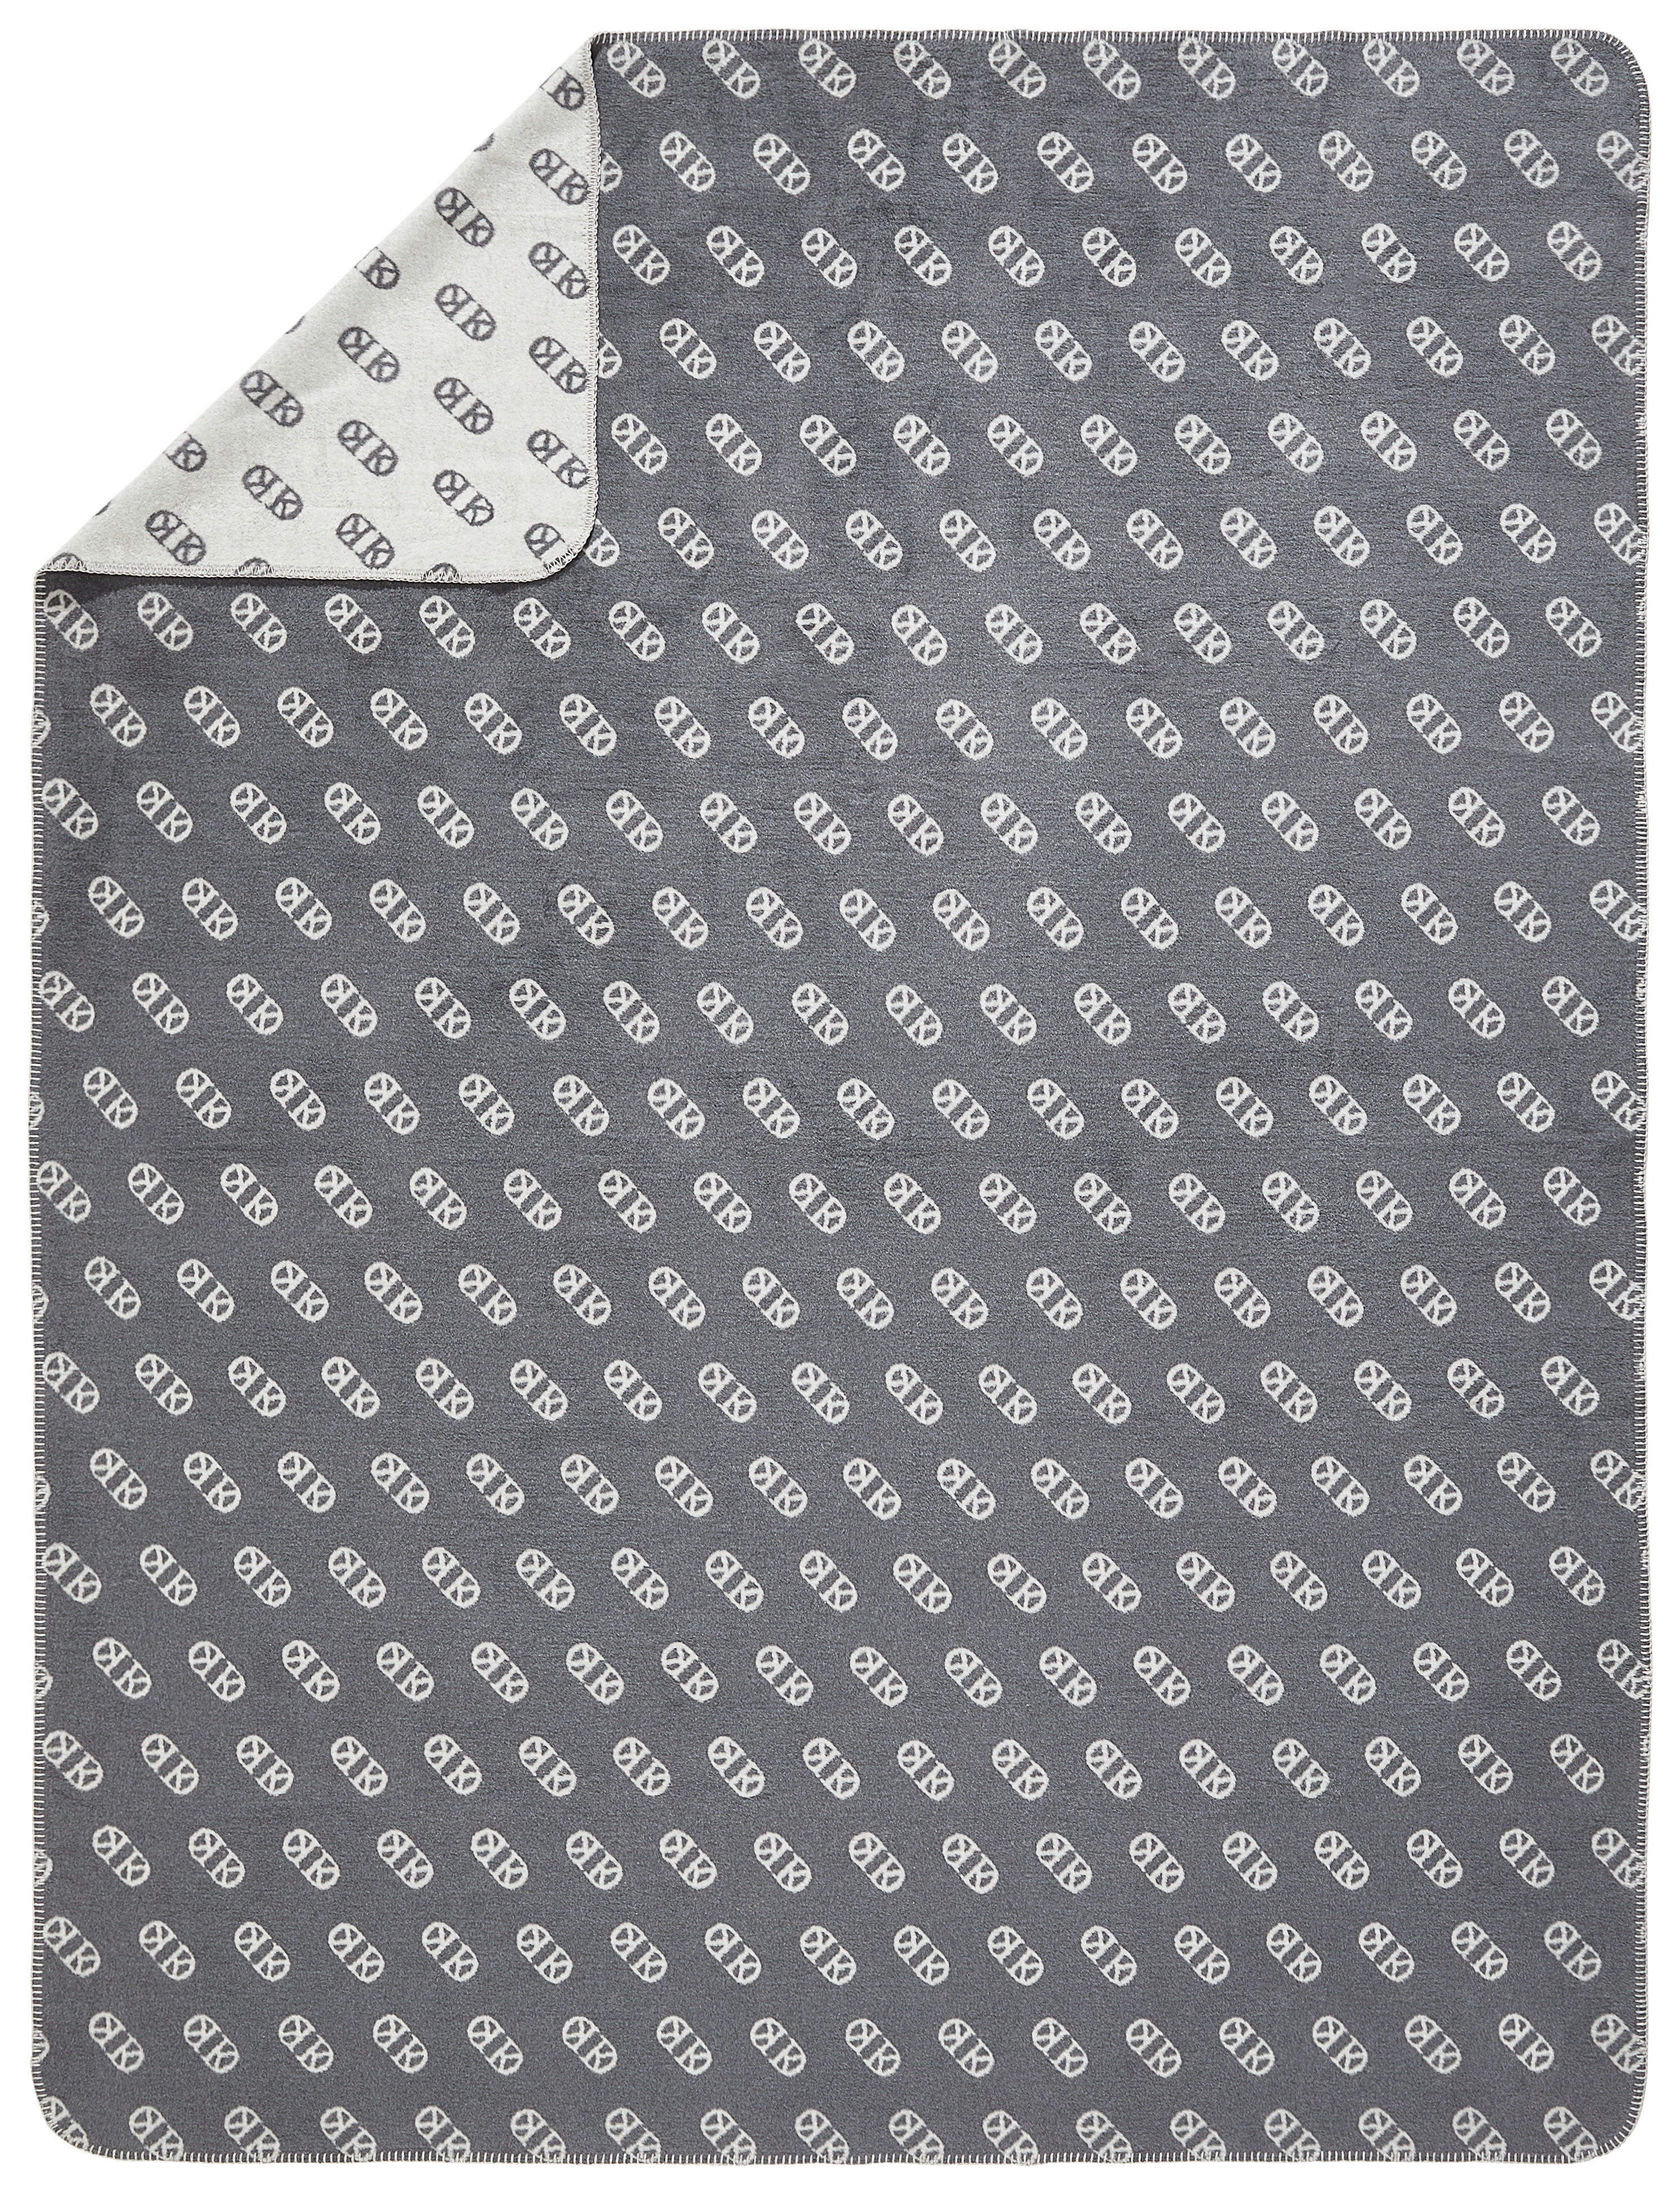 WOHNDECKE BASIC 150/200 cm  - Anthrazit/Silberfarben, Design, Textil (150/200cm) - Dieter Knoll